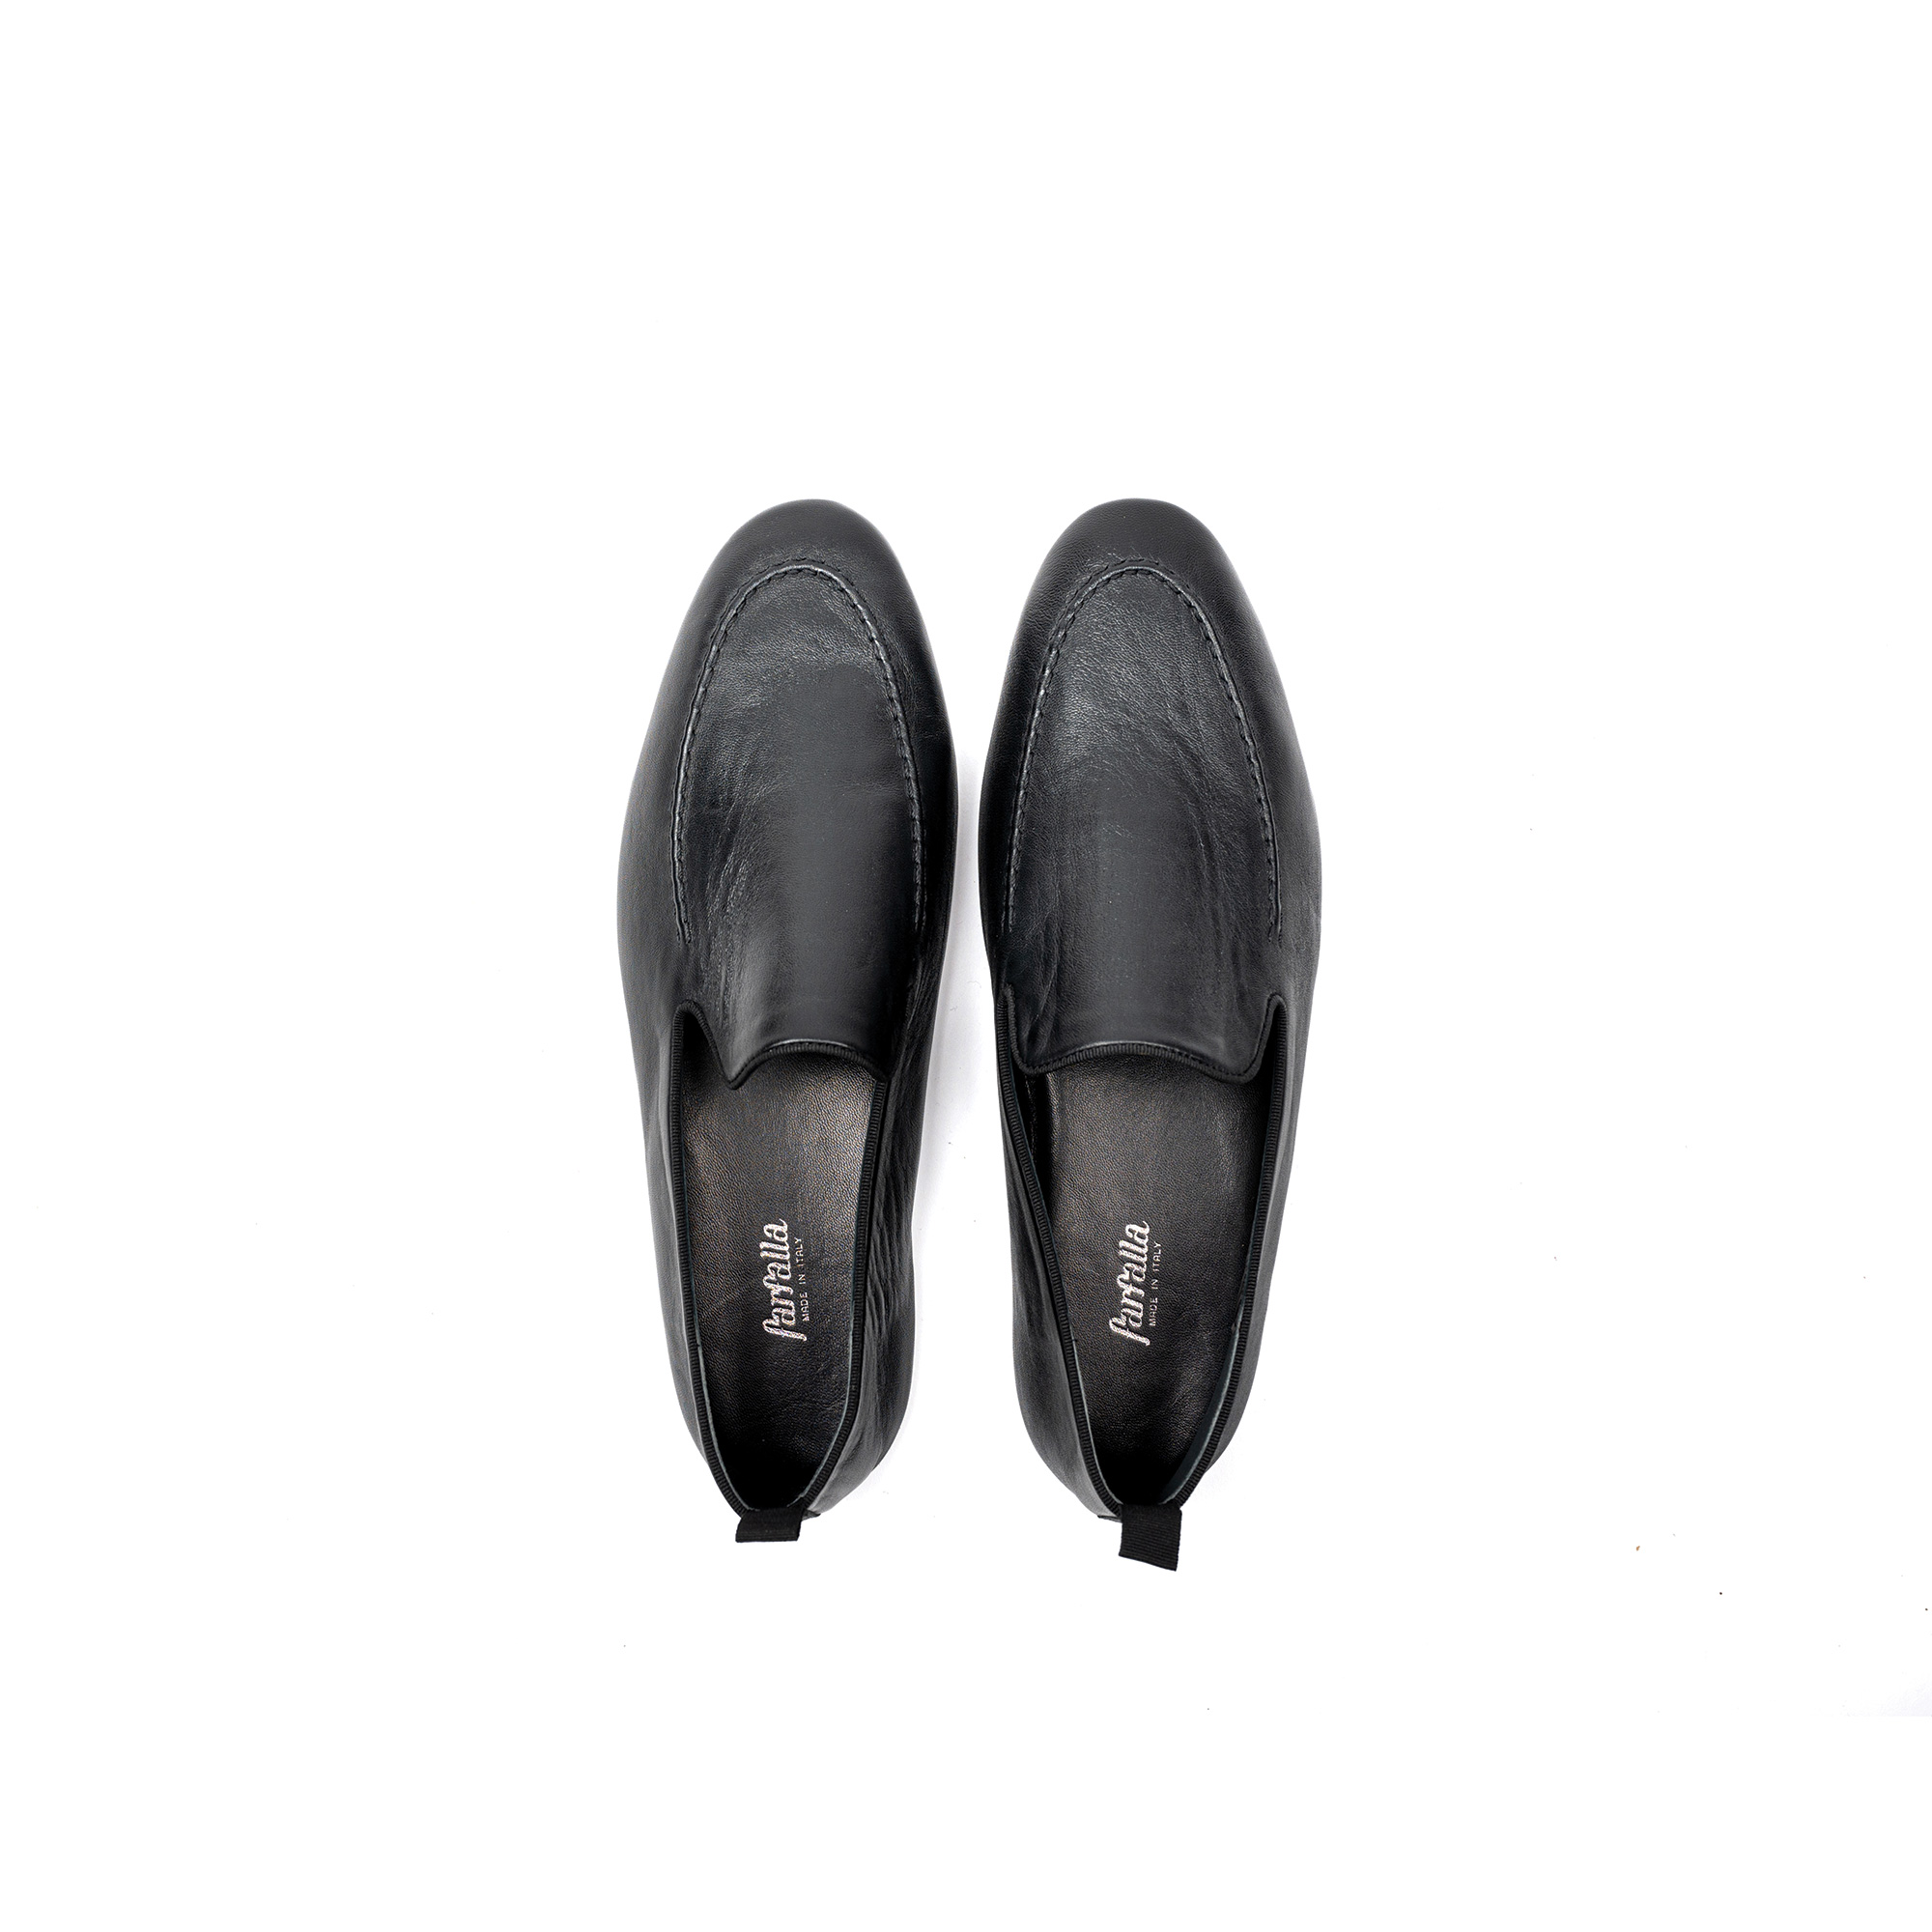 Pantofola interno classico in nappa - Farfalla italian slippers